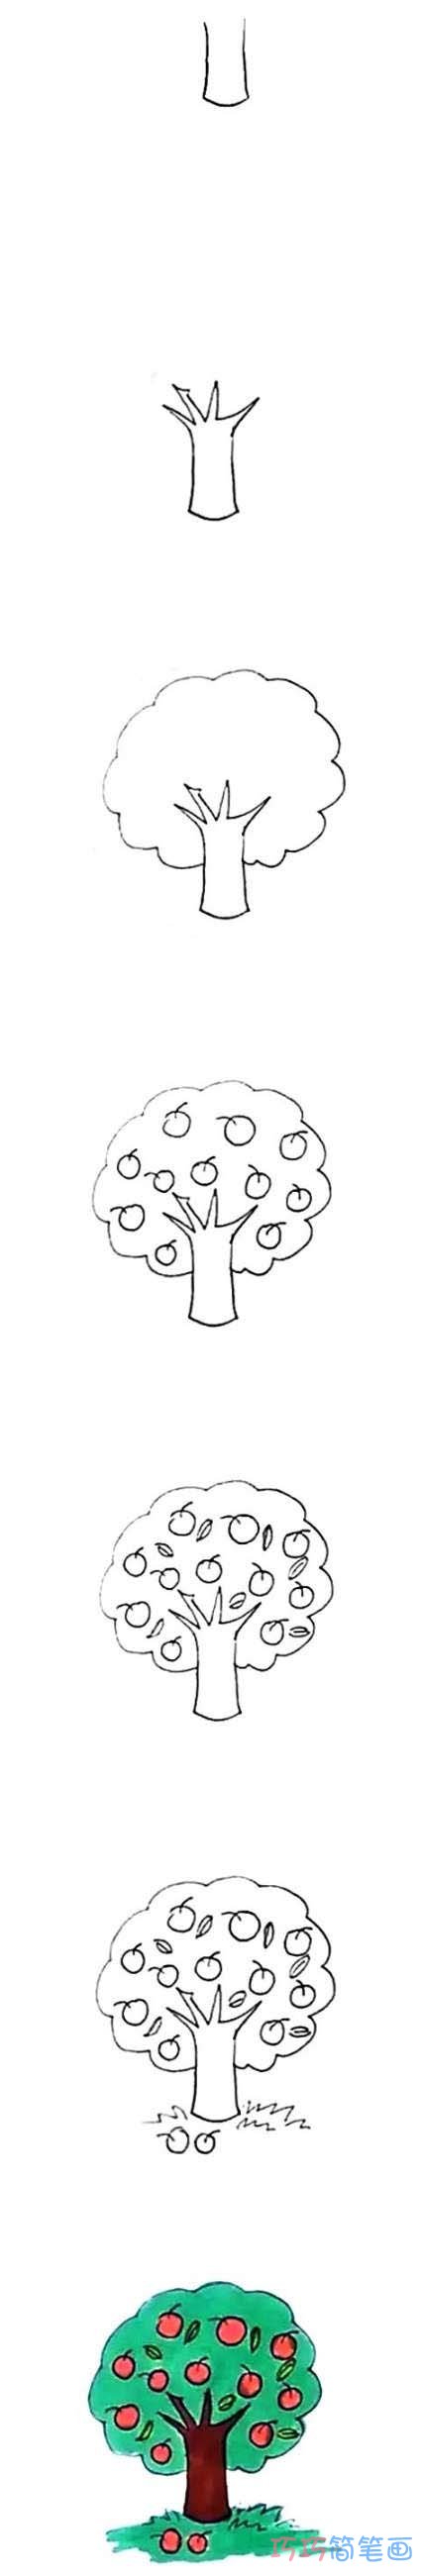 教你怎么画苹果树简笔画步骤教程涂色